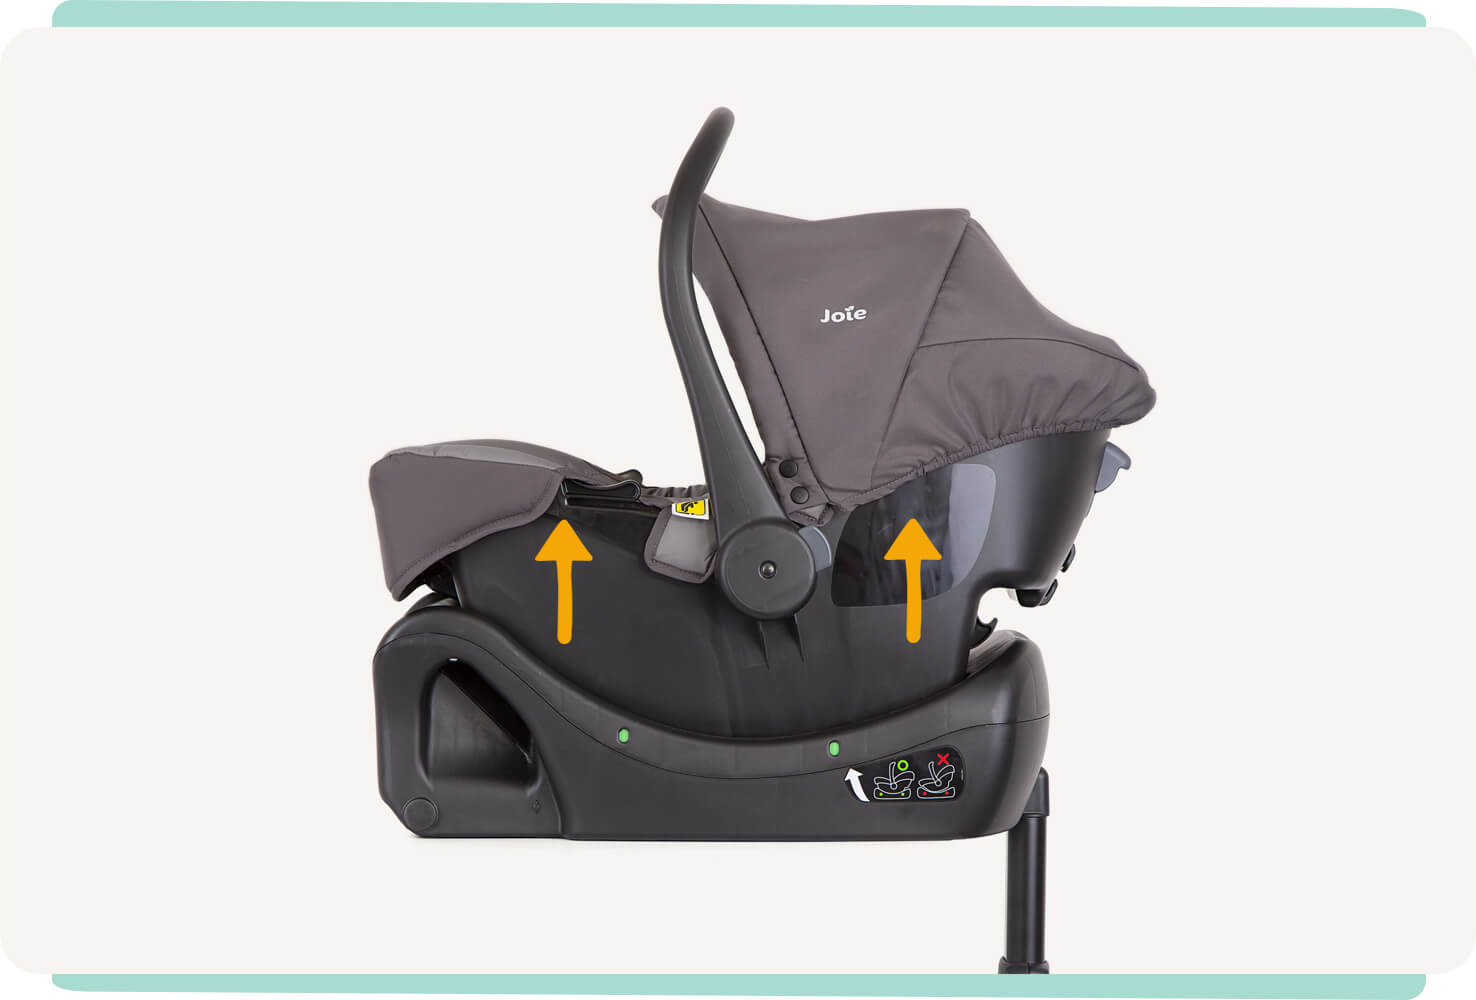 Socle pour siège auto enfant Joie clickFIT vue de profil, avec un siège auto pour bébé installé sur le socle. Deux flèches orange recouvrant le siège auto et pointant vers le haut.